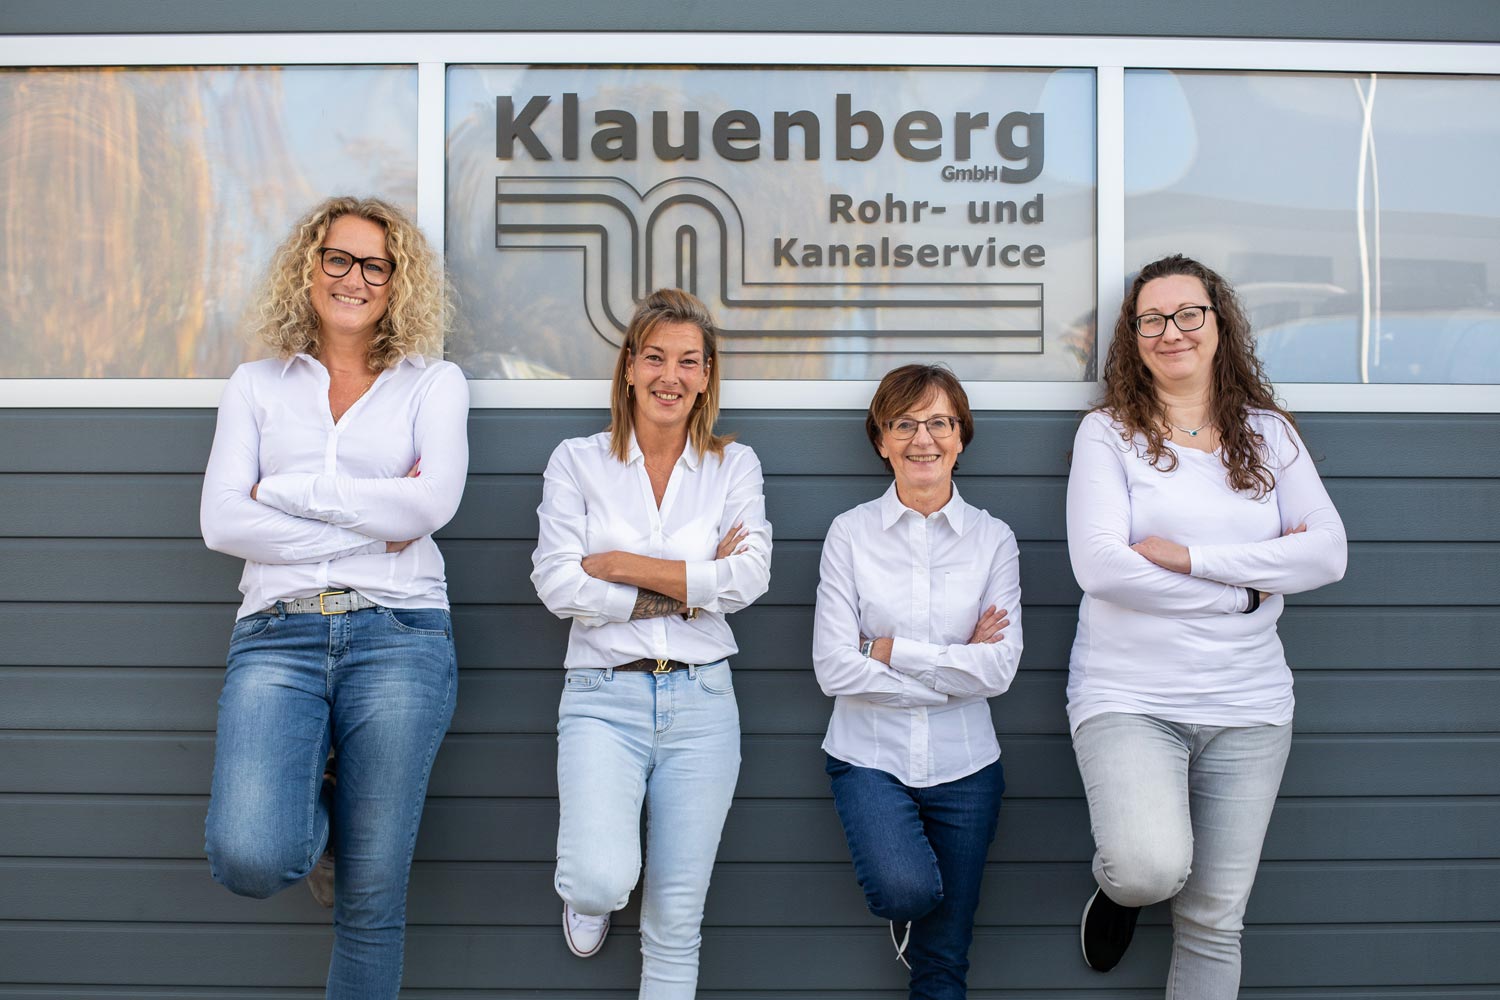 Bild 2 Klauenberg GmbH Rohr- und Kanalservice